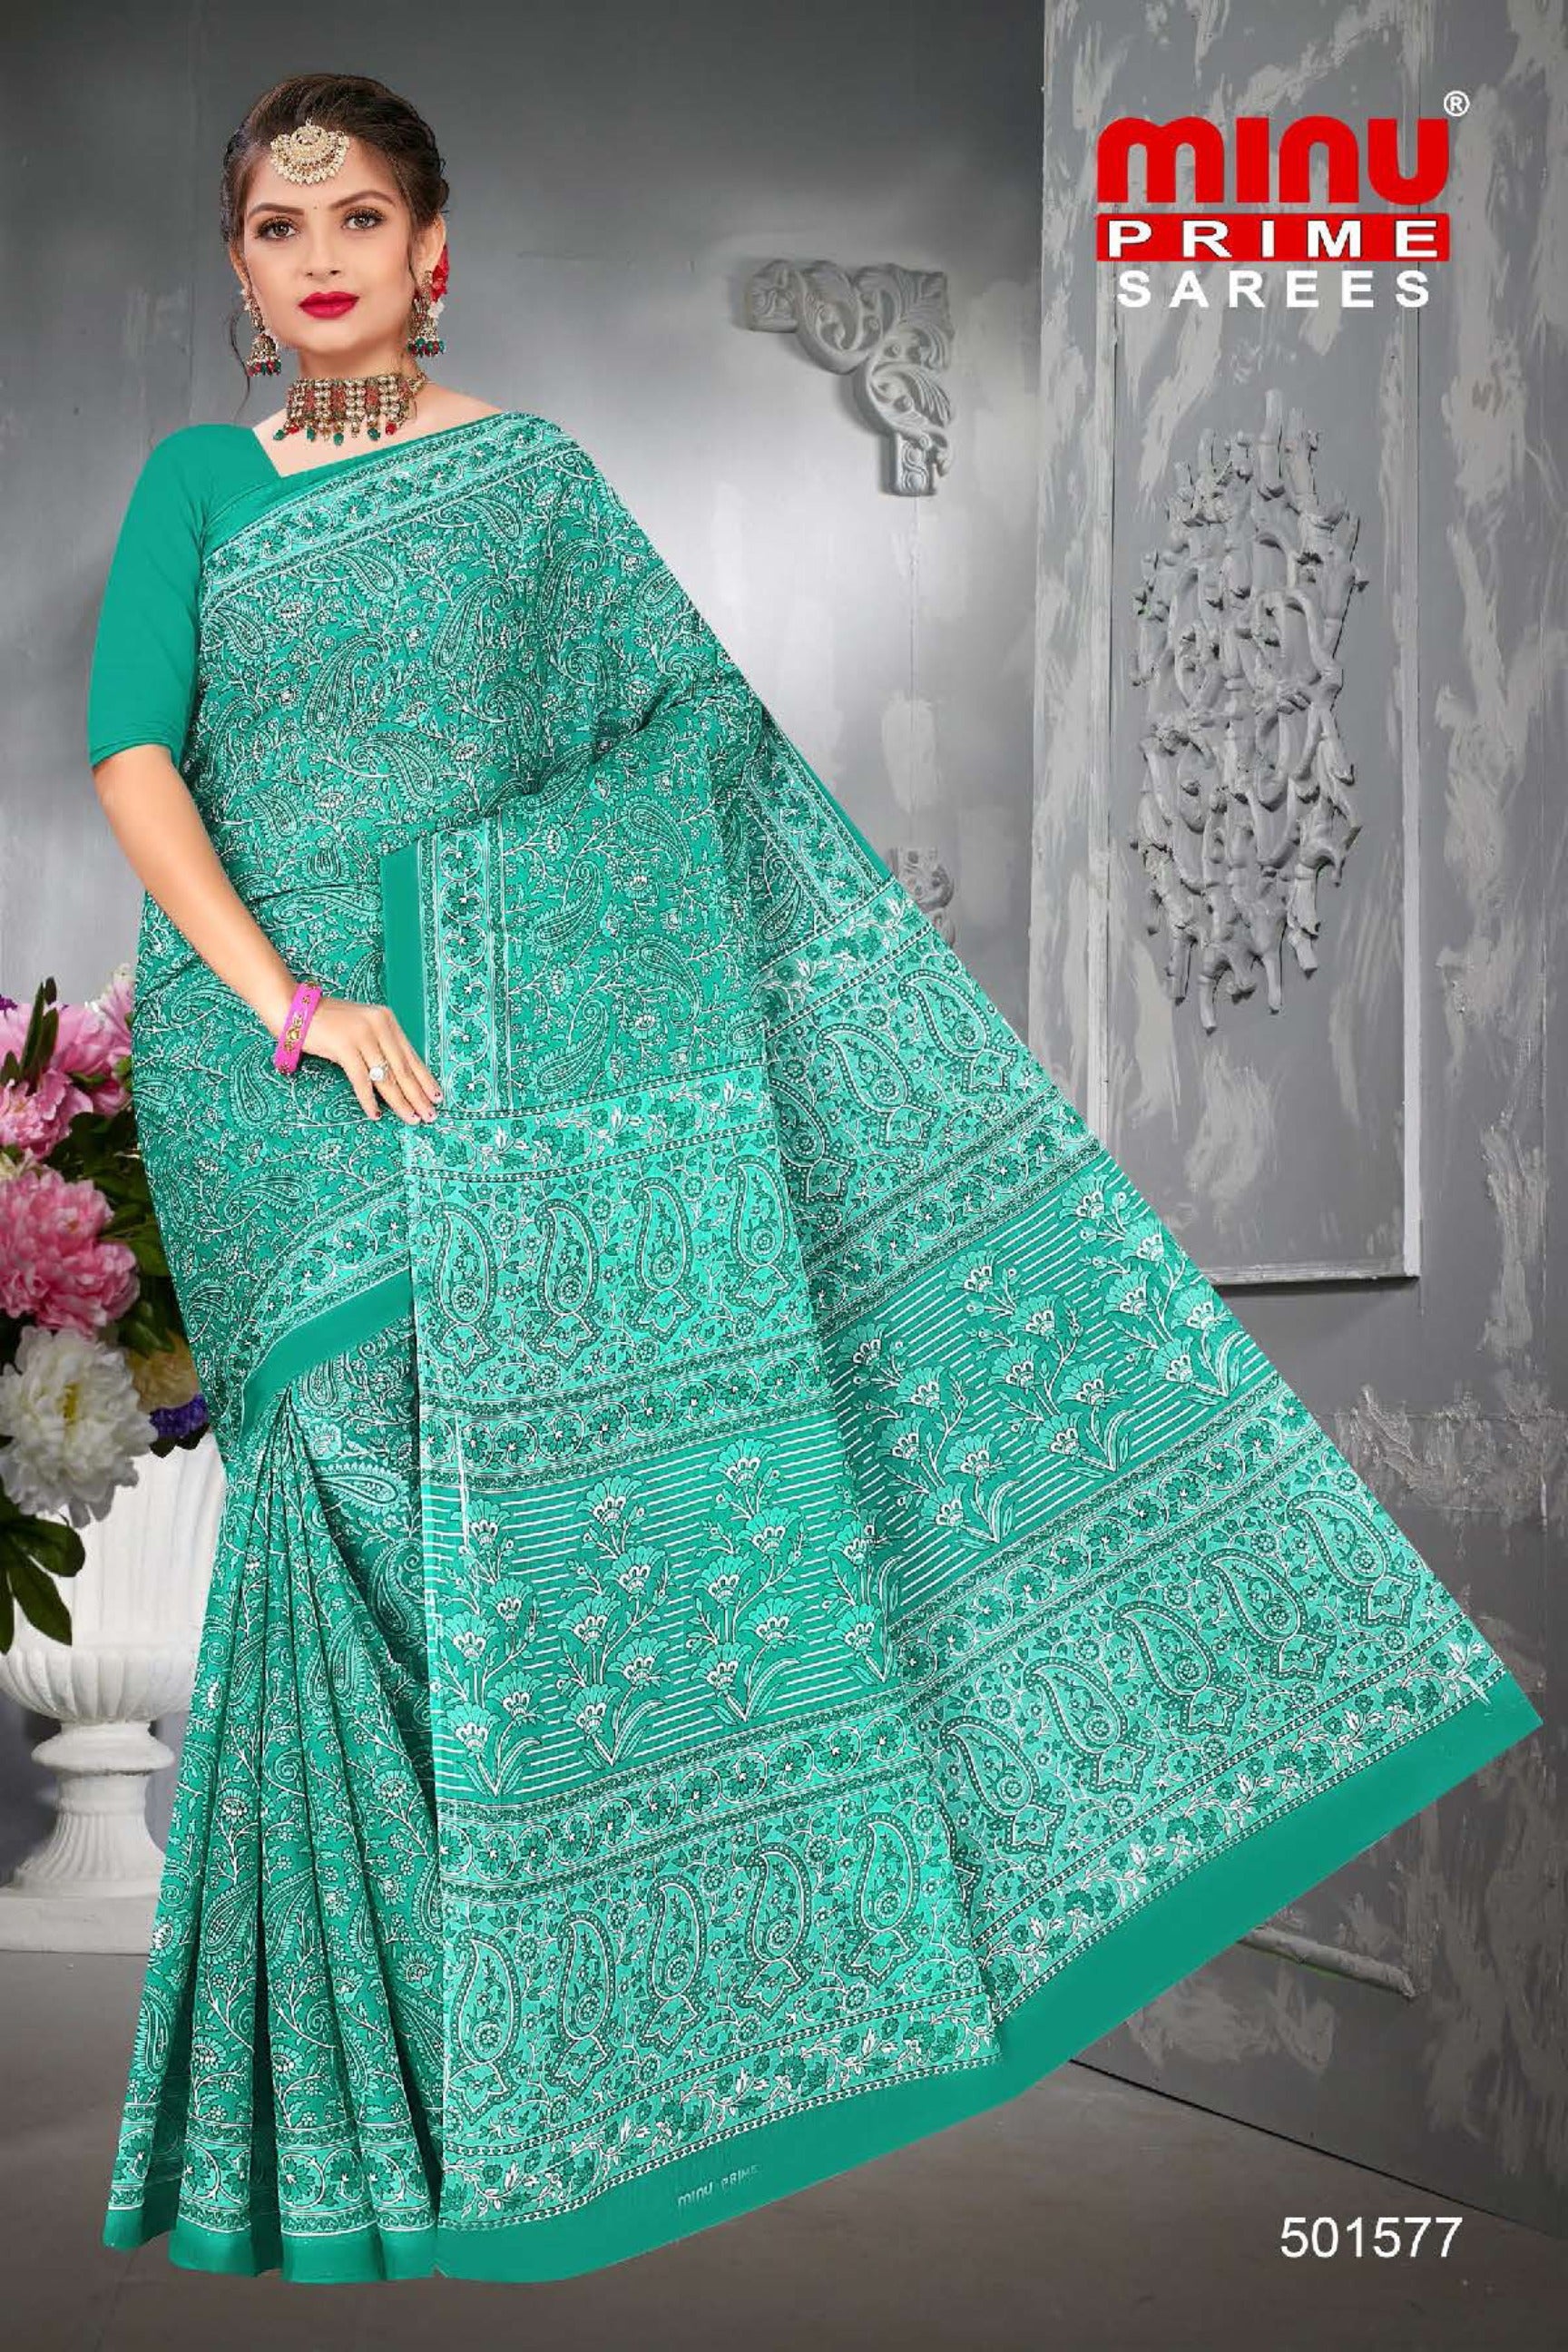 woman wearing saree from printed saree manufacturer